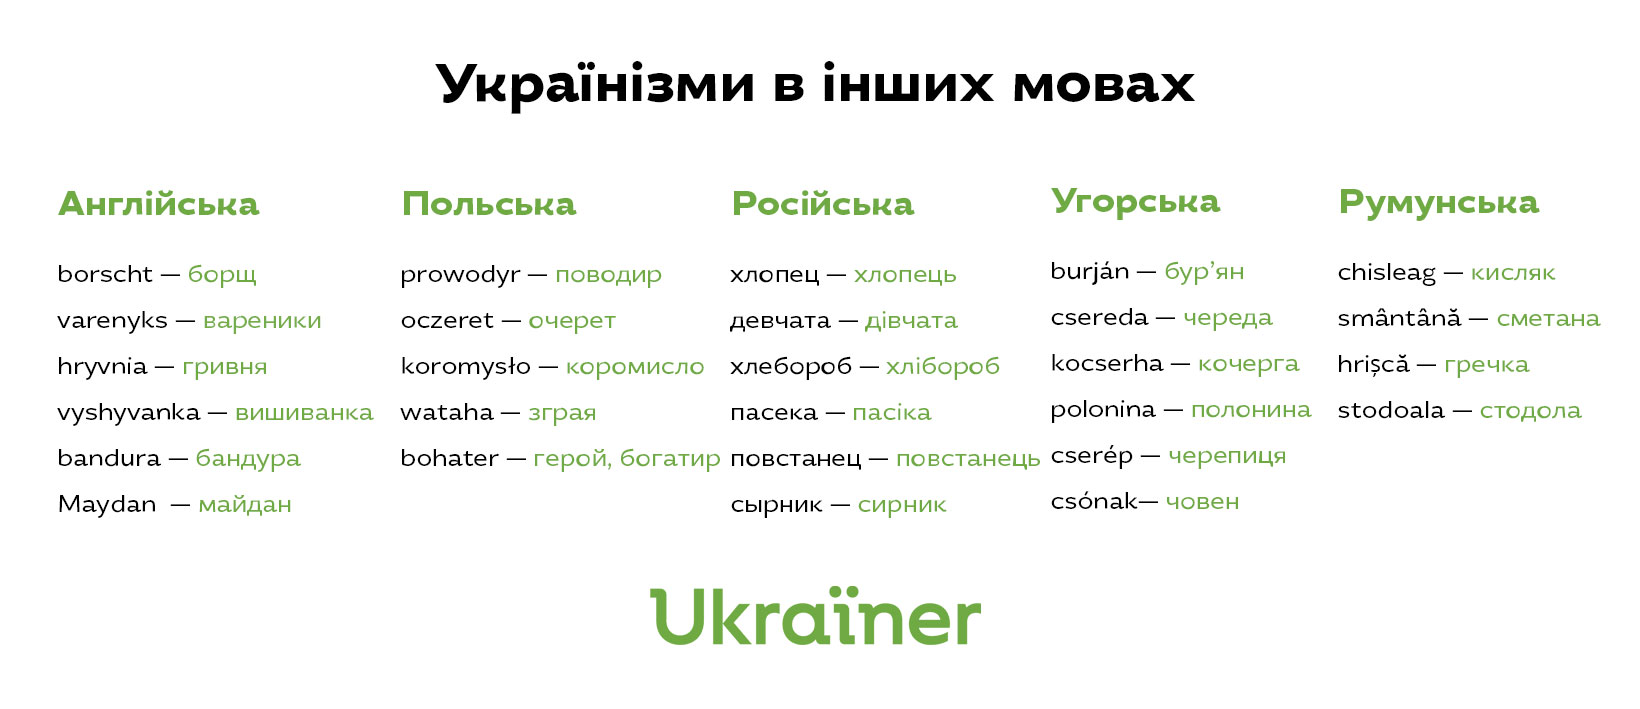 Що таке українська мова?